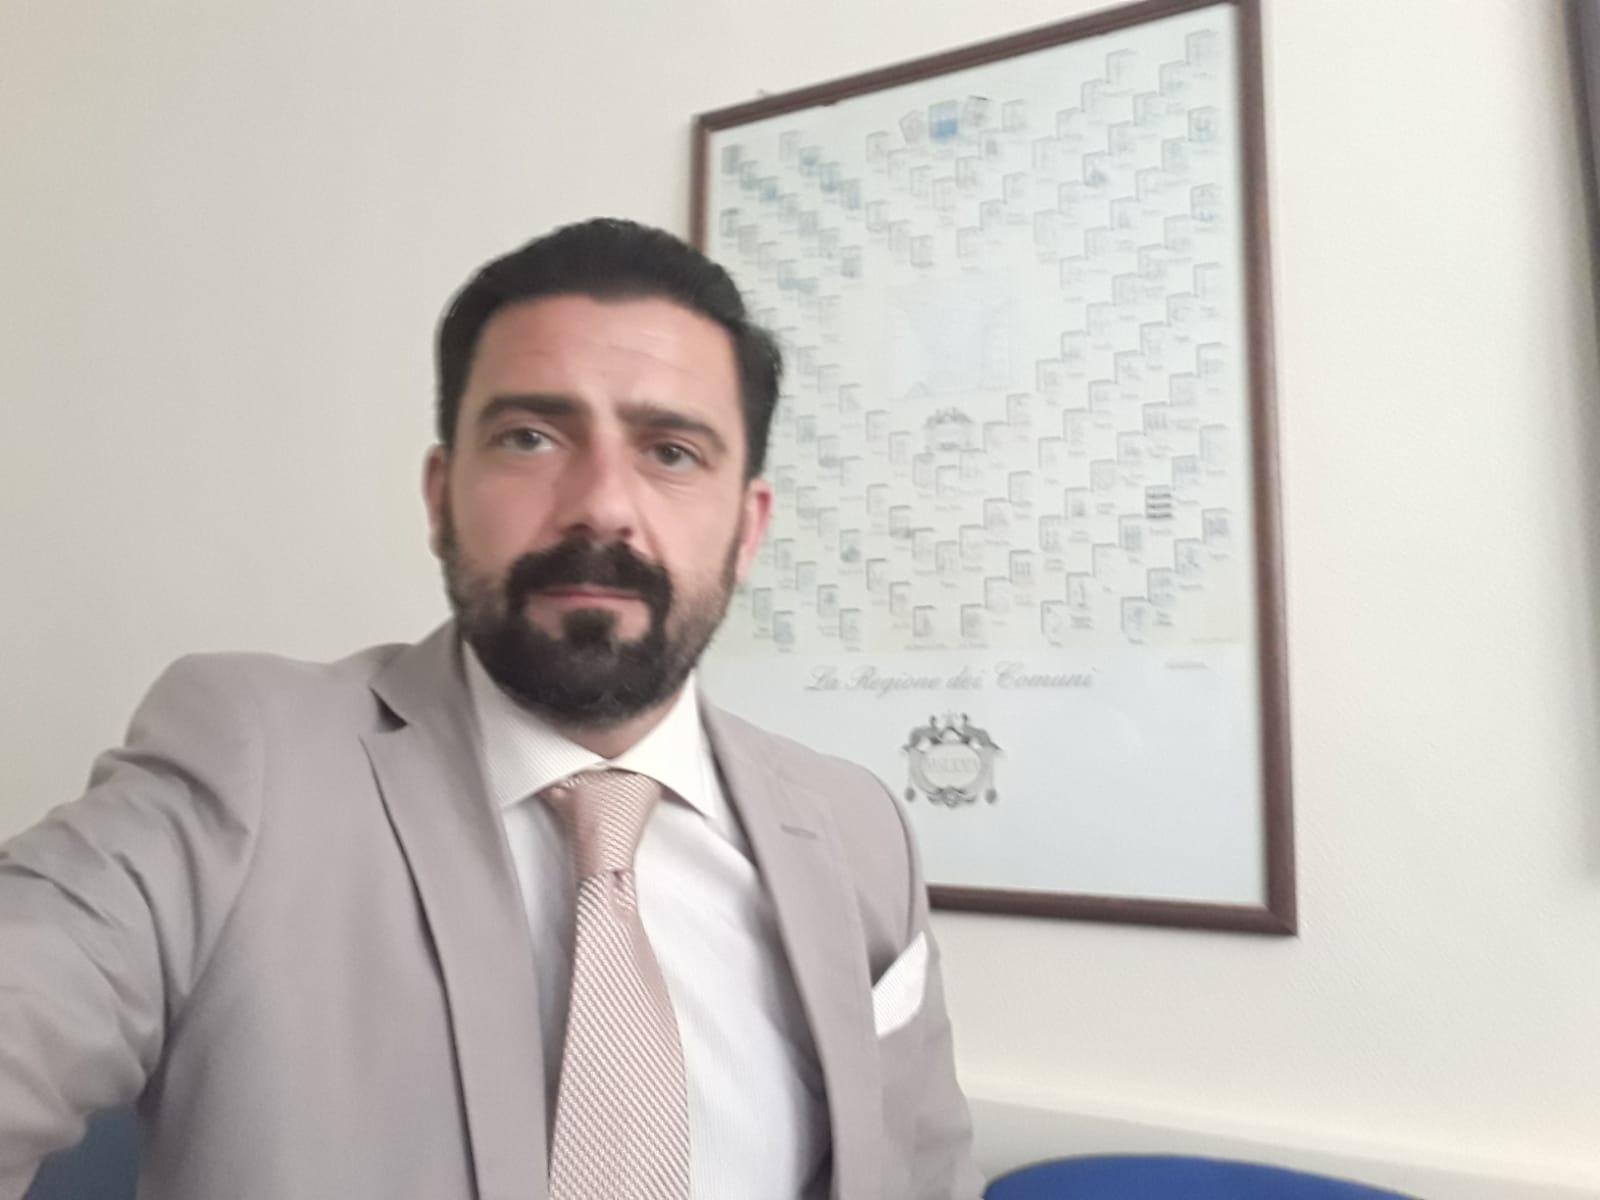 Antonio Caggiano batte gli avversari: è il nuovo sindaco di Auletta